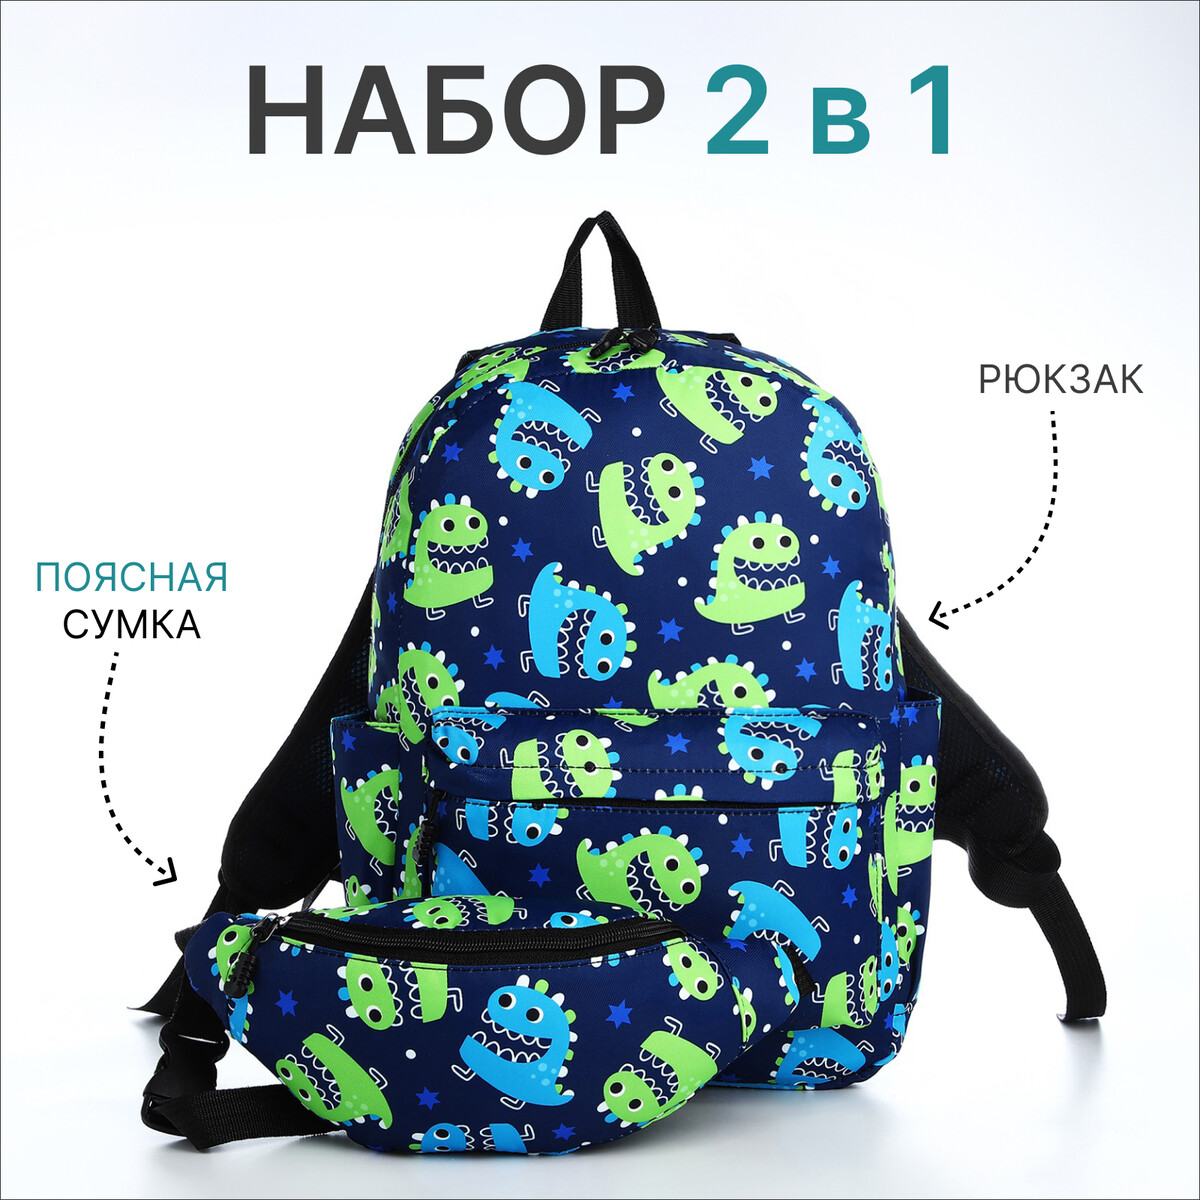 Рюкзак молодежный из текстиля на молнии, 3 кармана, поясная сумка, цвет синий поясная сумка для садового инструмента на ремне 3 кармана